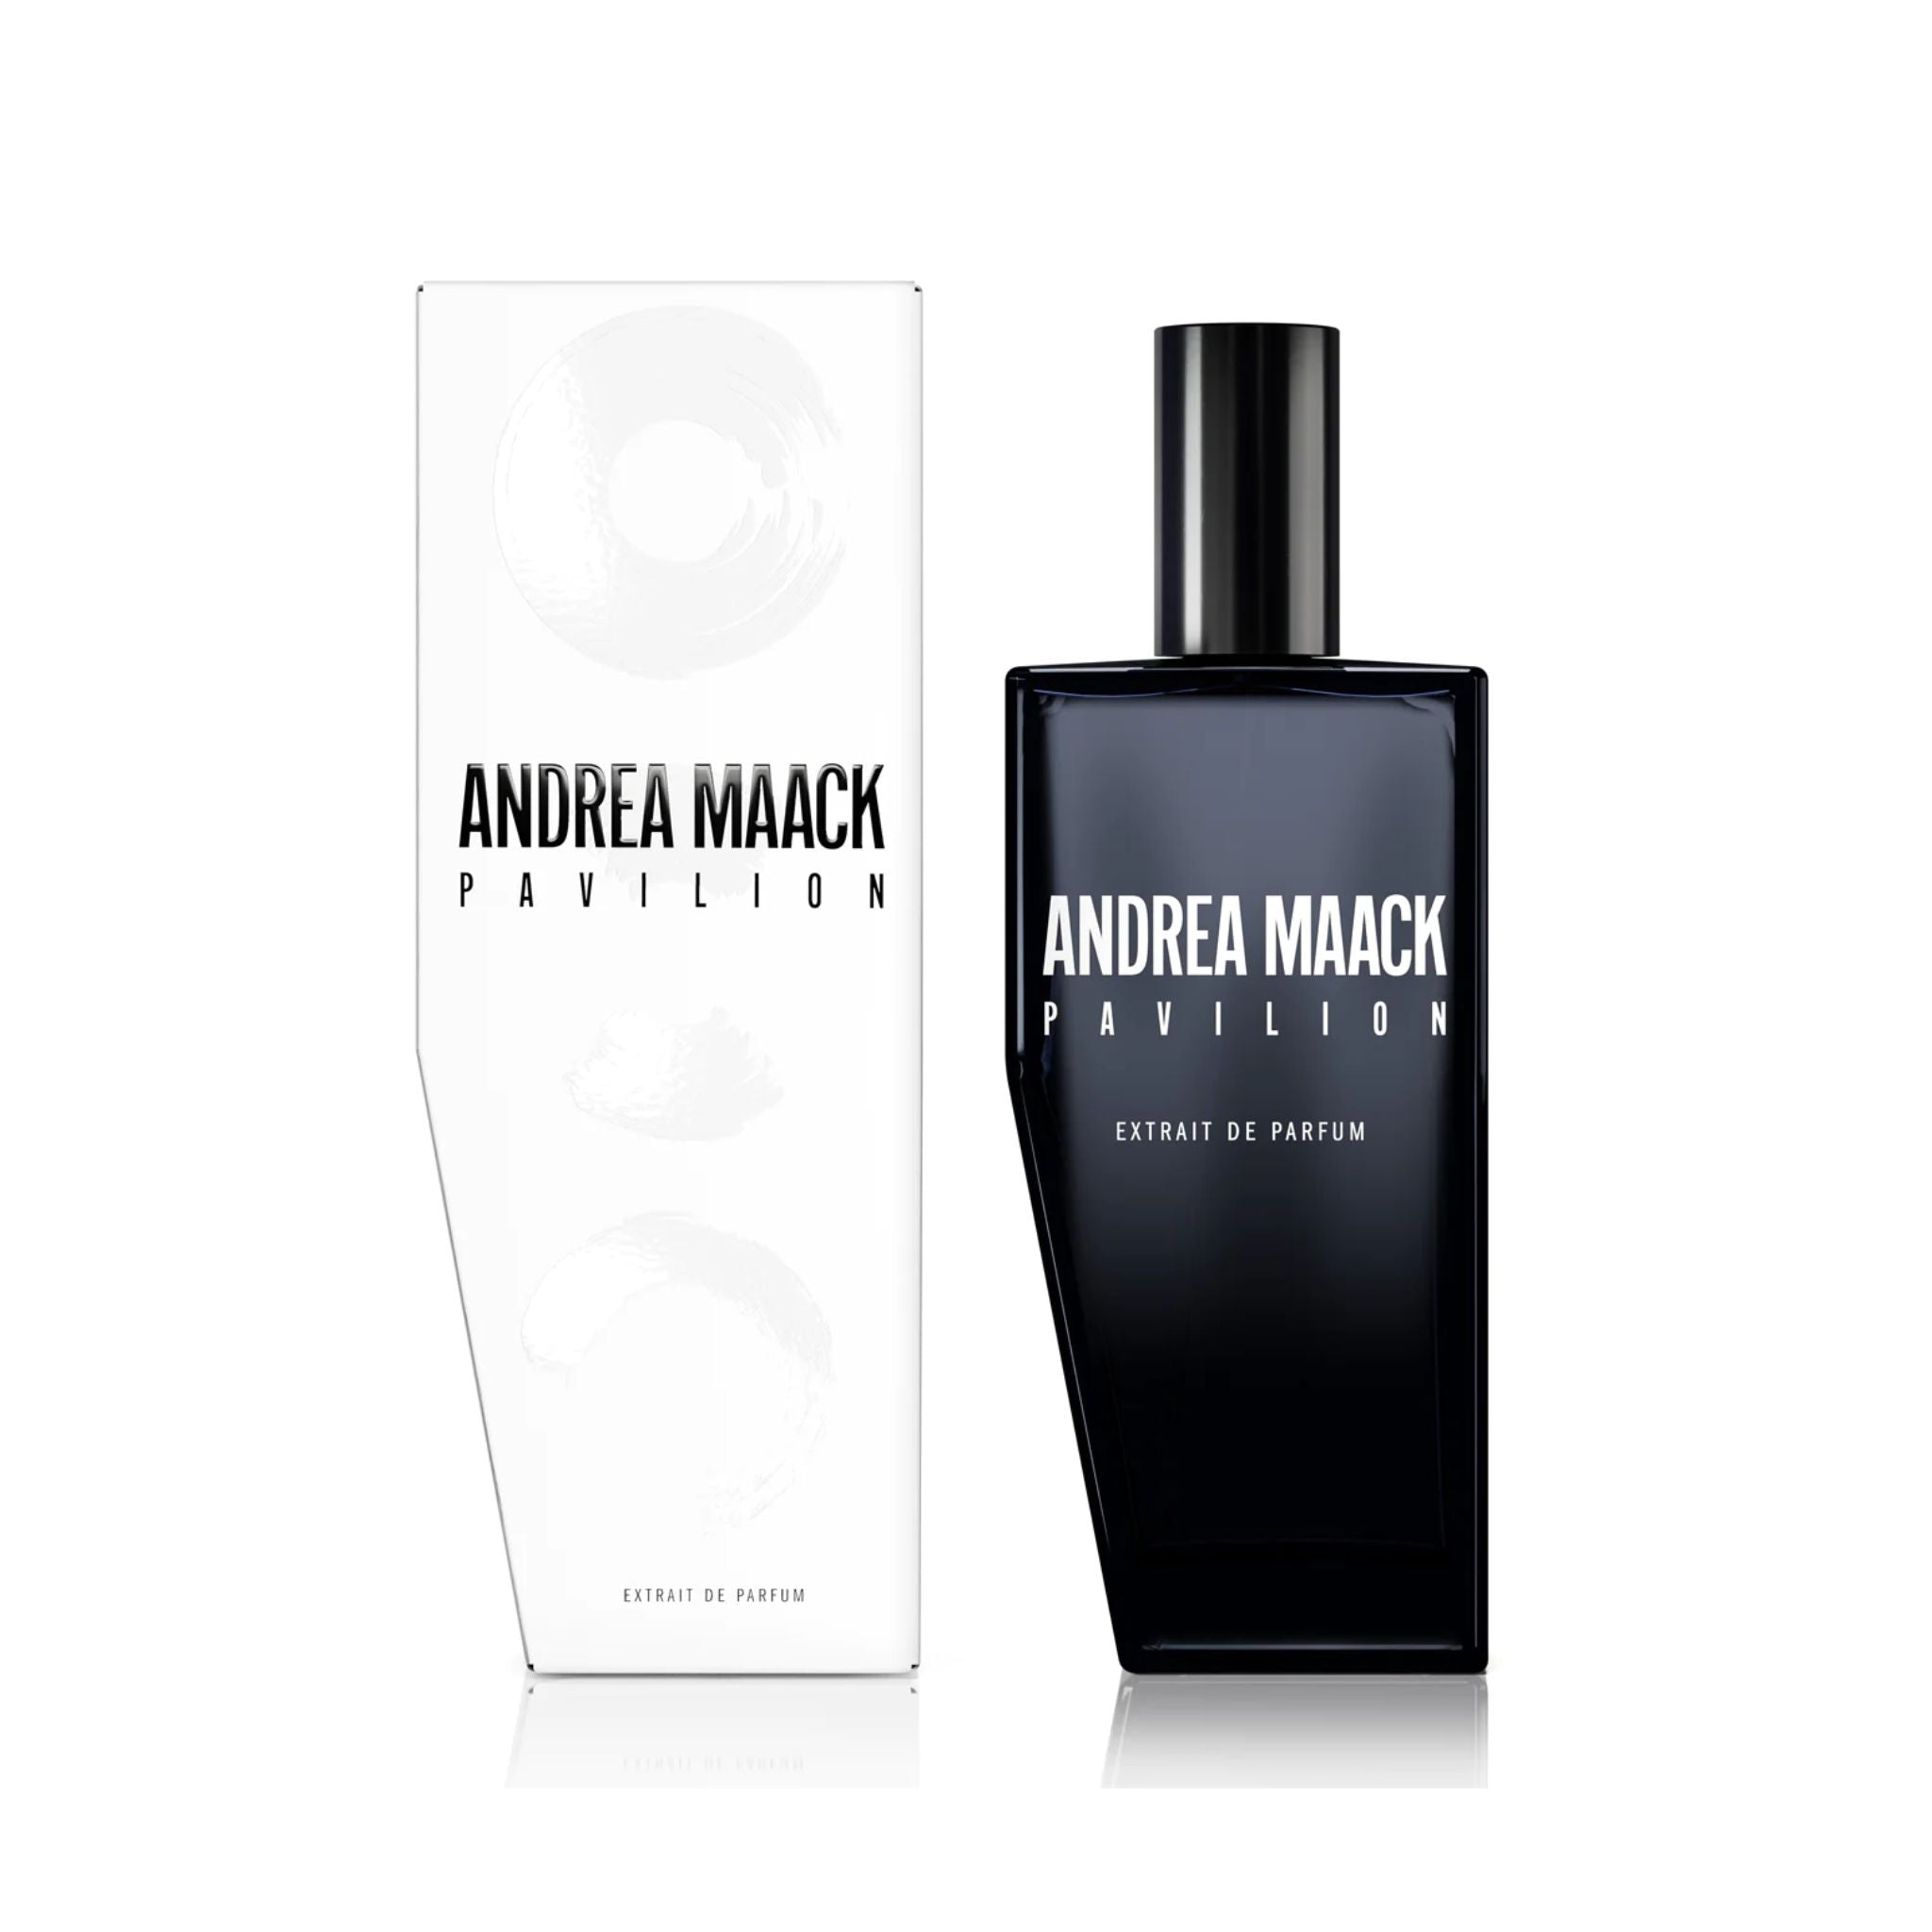 Pavilion Andrea Maack Perfume